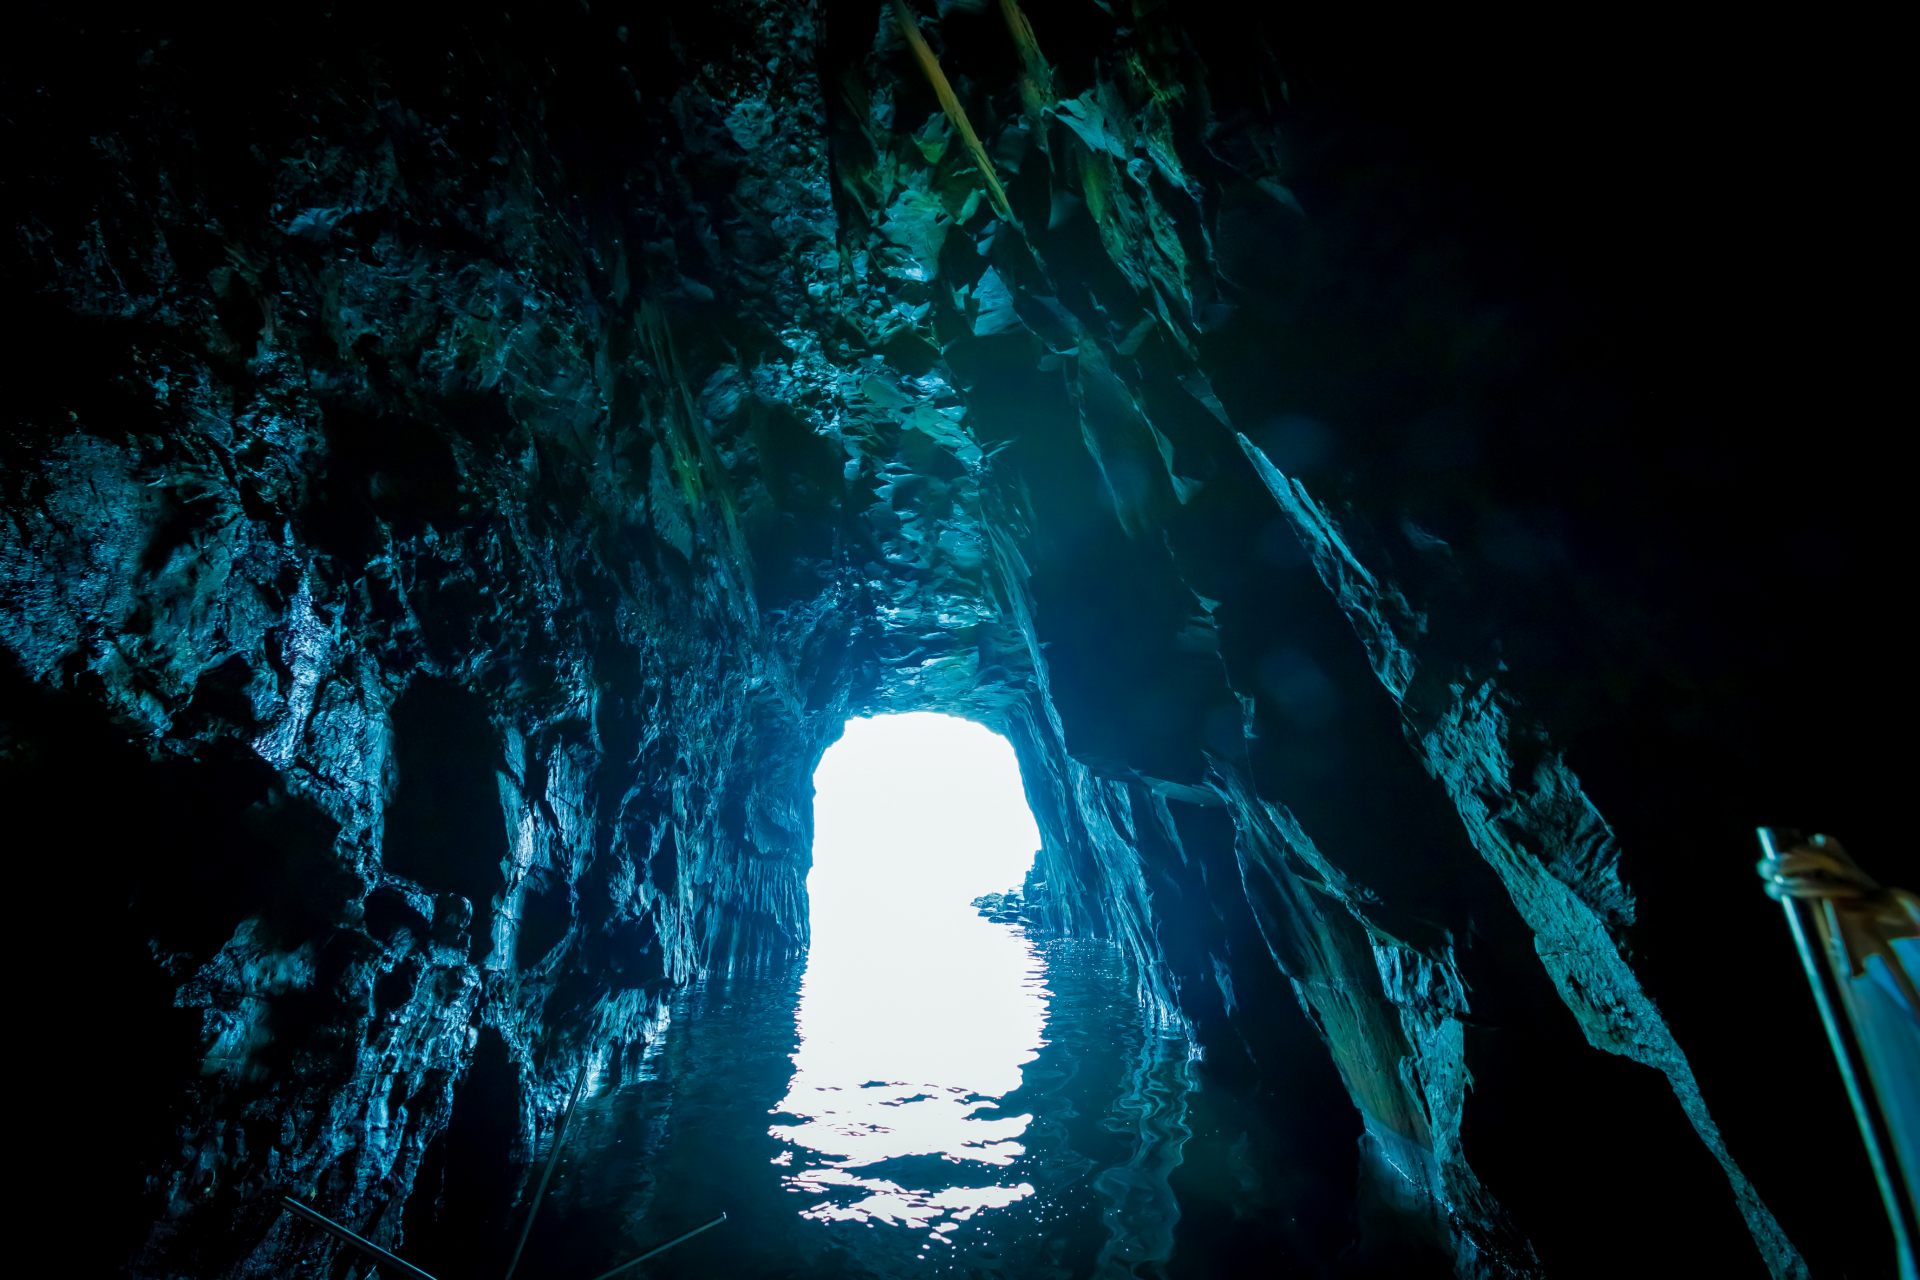 即使是小船，洞口也很難通過。但是，一旦您進入洞穴，就會被壯麗的景色包圍。